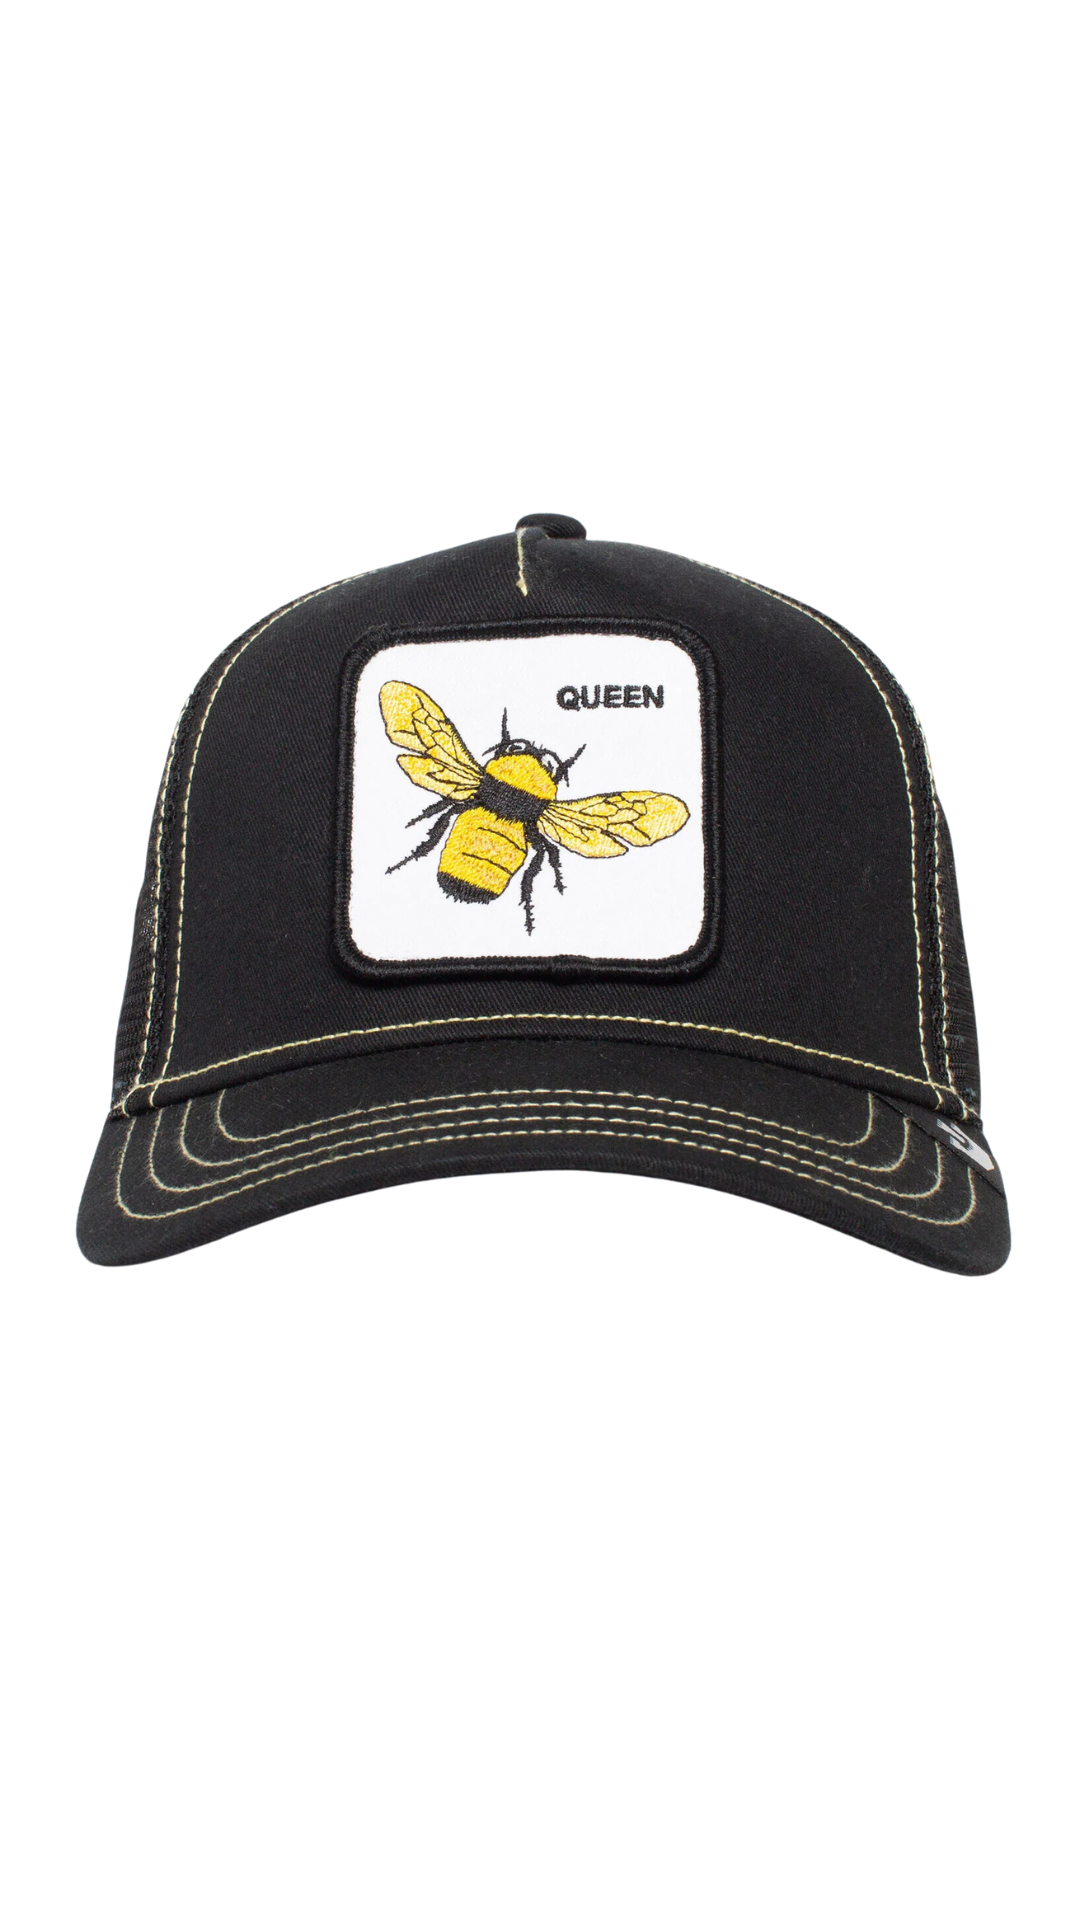 BLK Queen Bee Hat